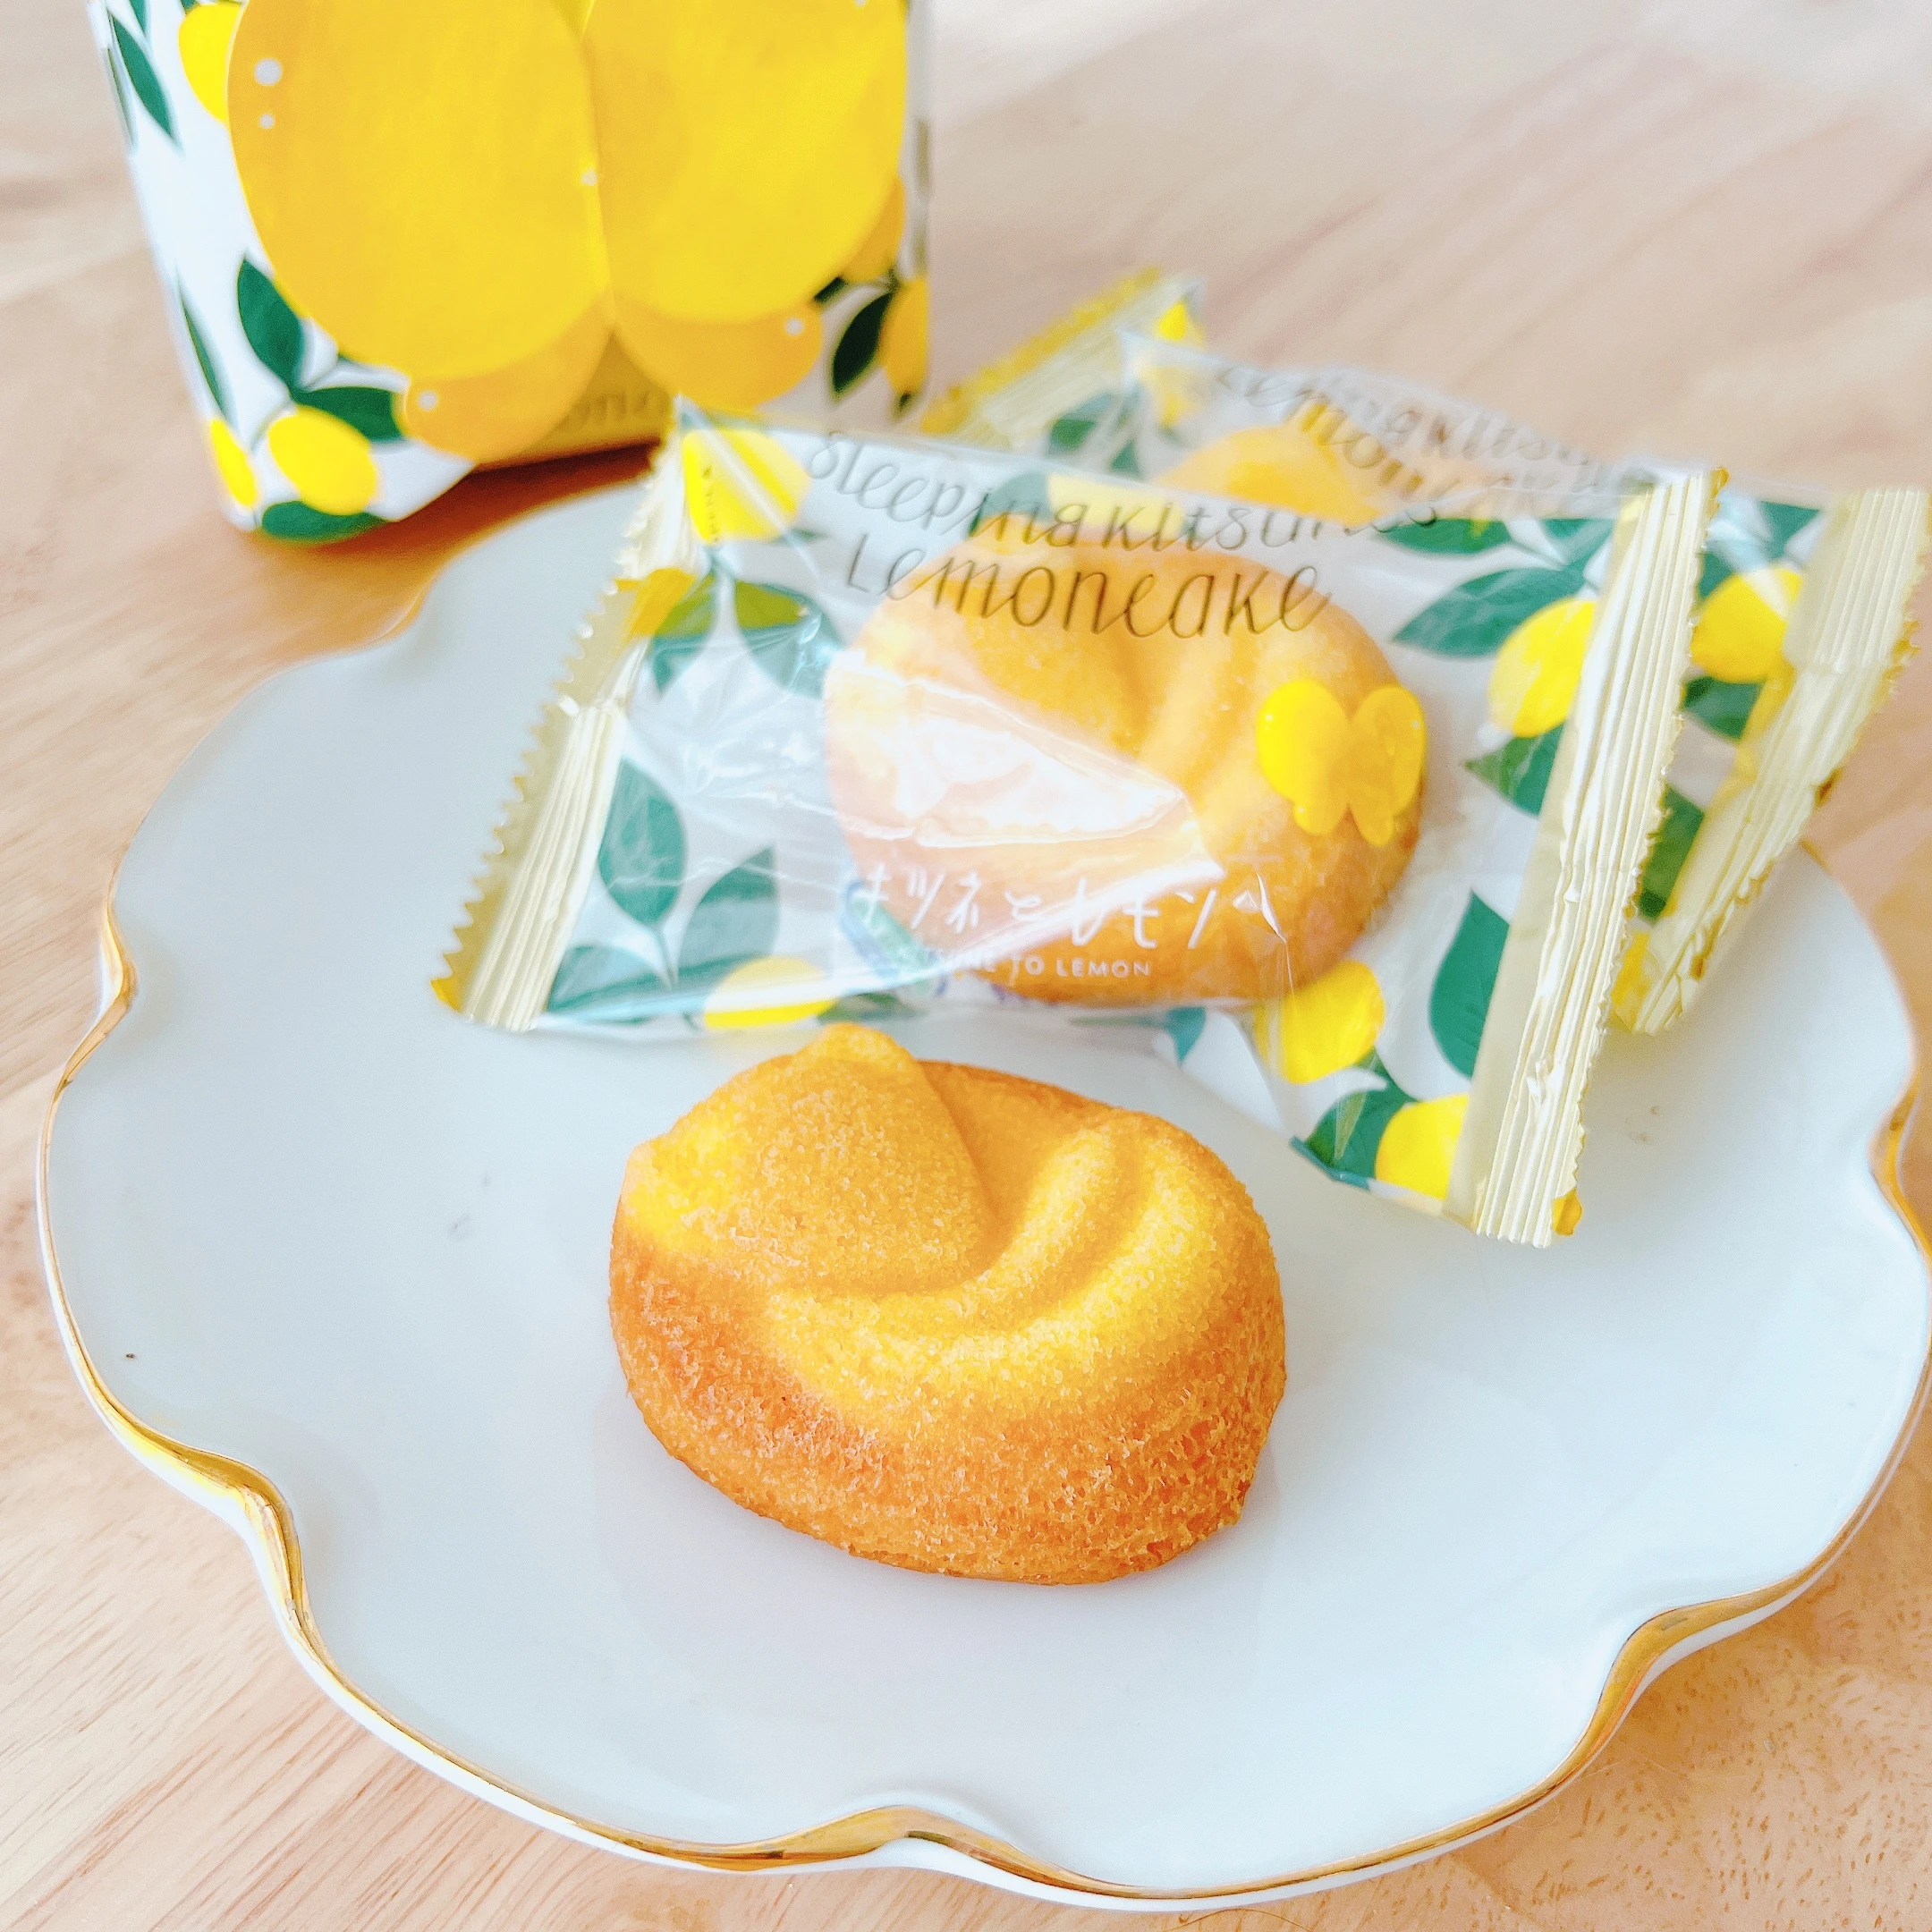 モロゾフの新ブランドのお菓子「キツネとレモン」の 「眠りキツネのレモンケーキ」